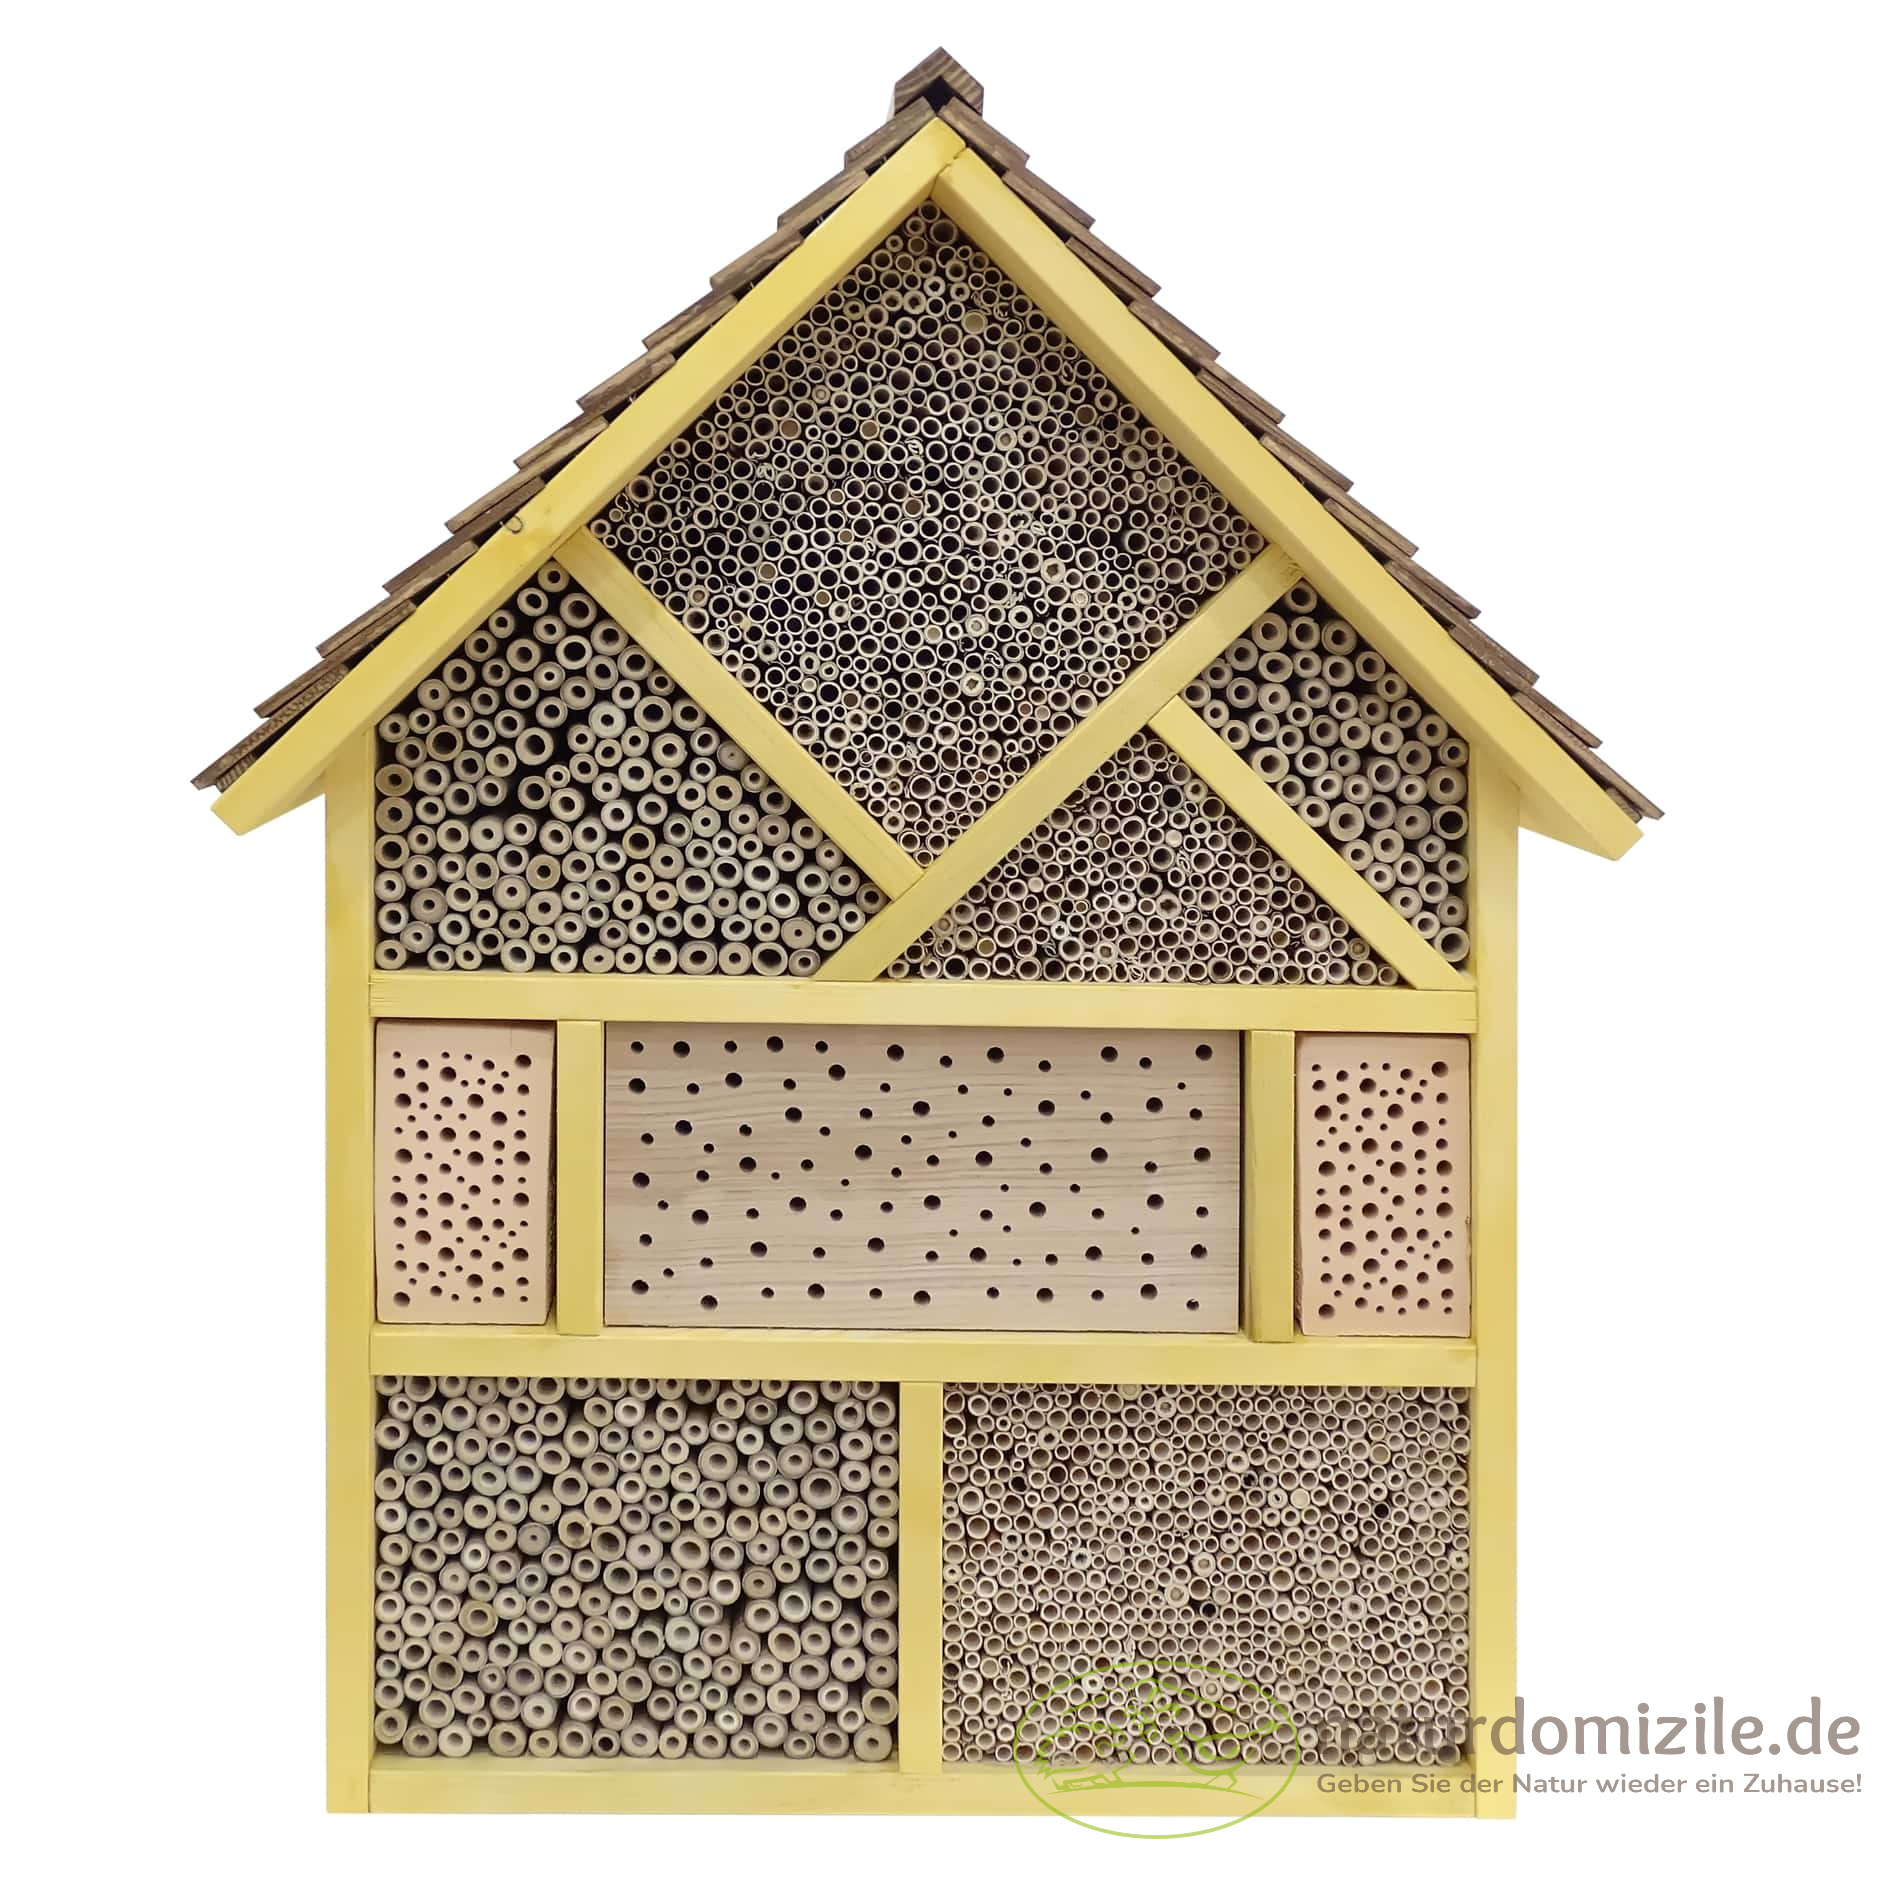 Insektenhotel zur Bienenkönigin in Fichte